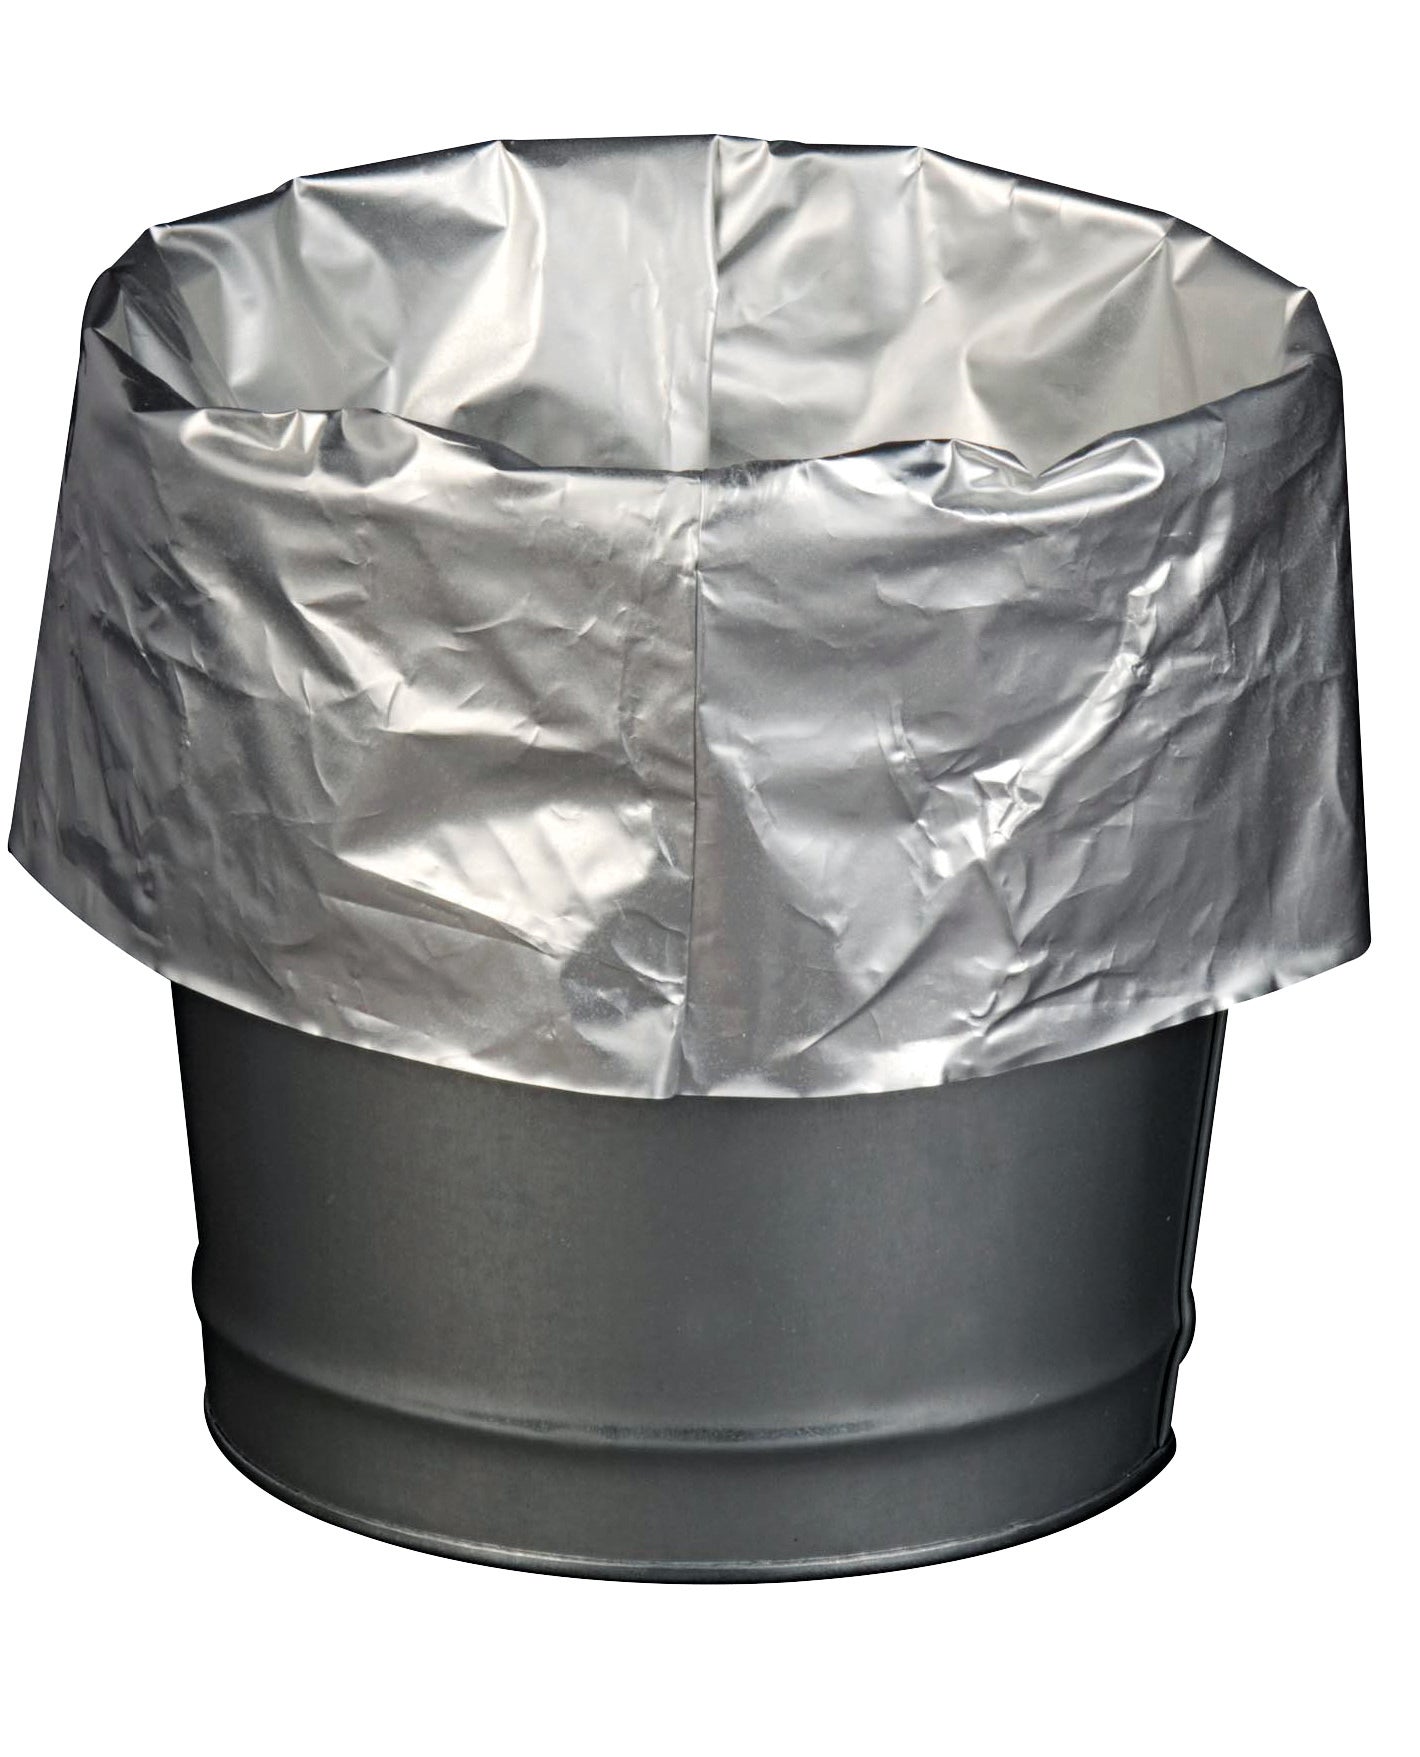 Sacs poubelle, recouverts d'aluminium pour Cendrier sur pied de sécurité